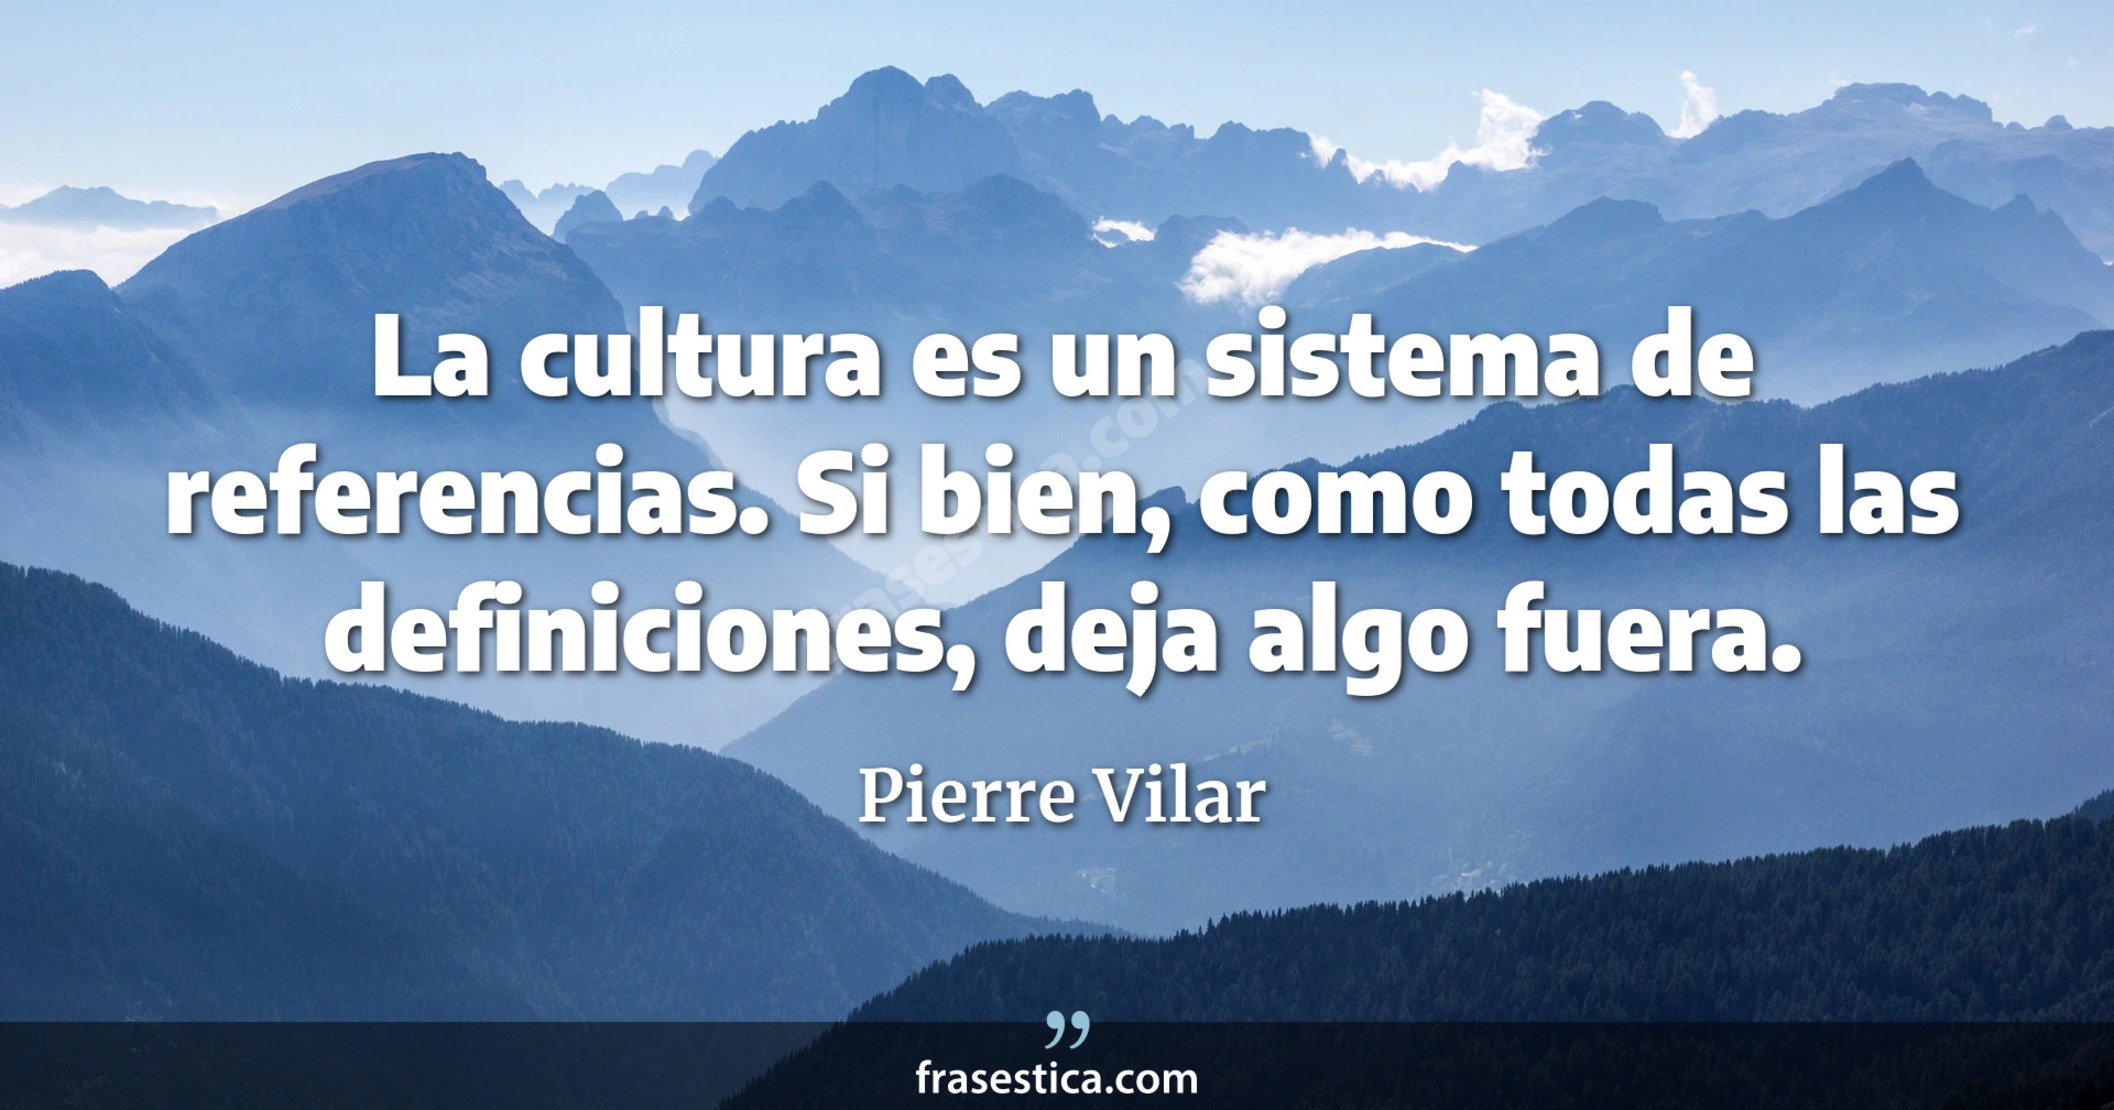 La cultura es un sistema de referencias. Si bien, como todas las definiciones, deja algo fuera. - Pierre Vilar